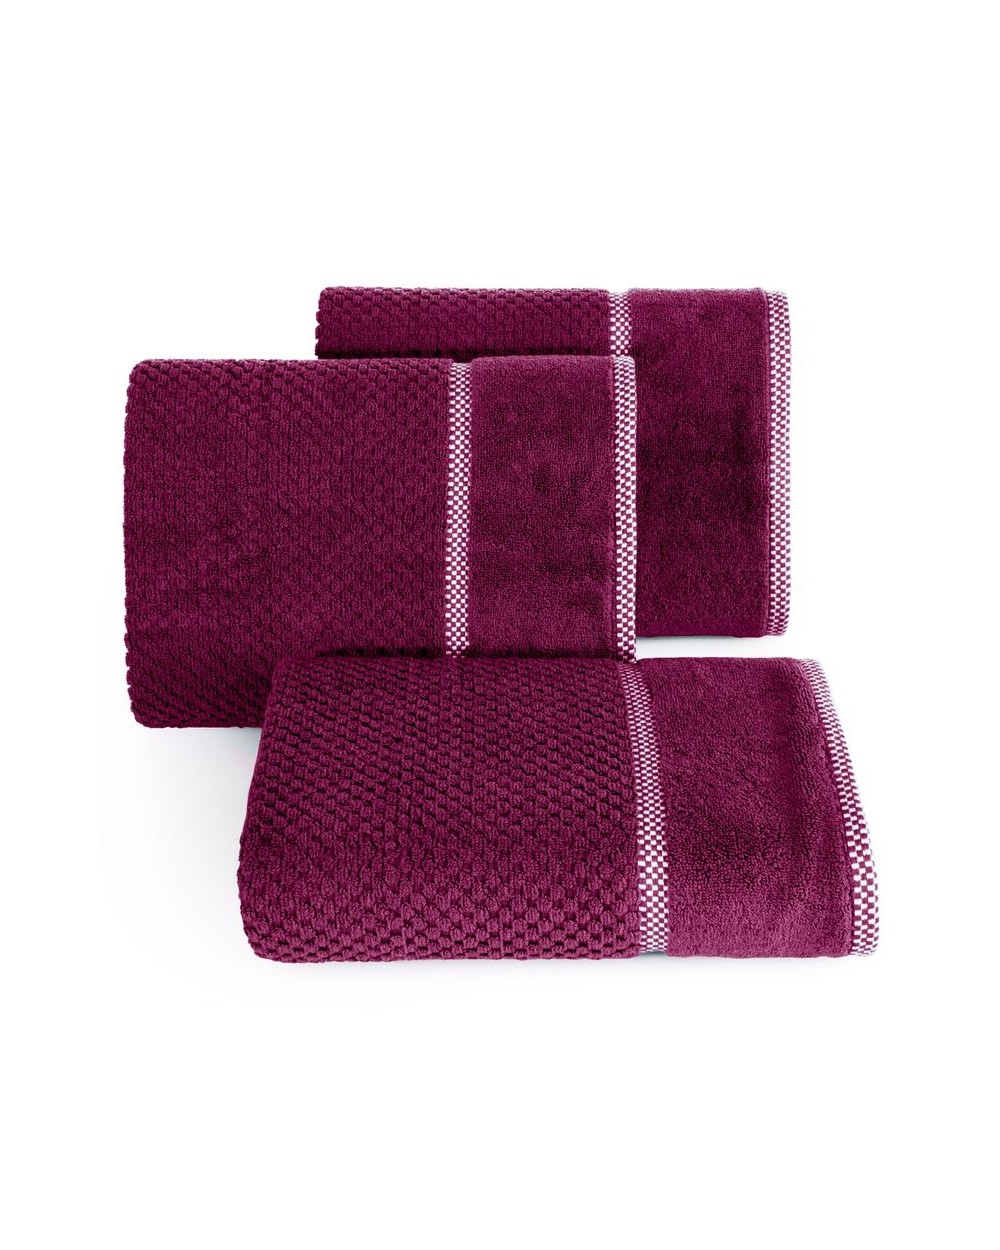 Ręcznik bawełna 50x90 Caleb amarantowy